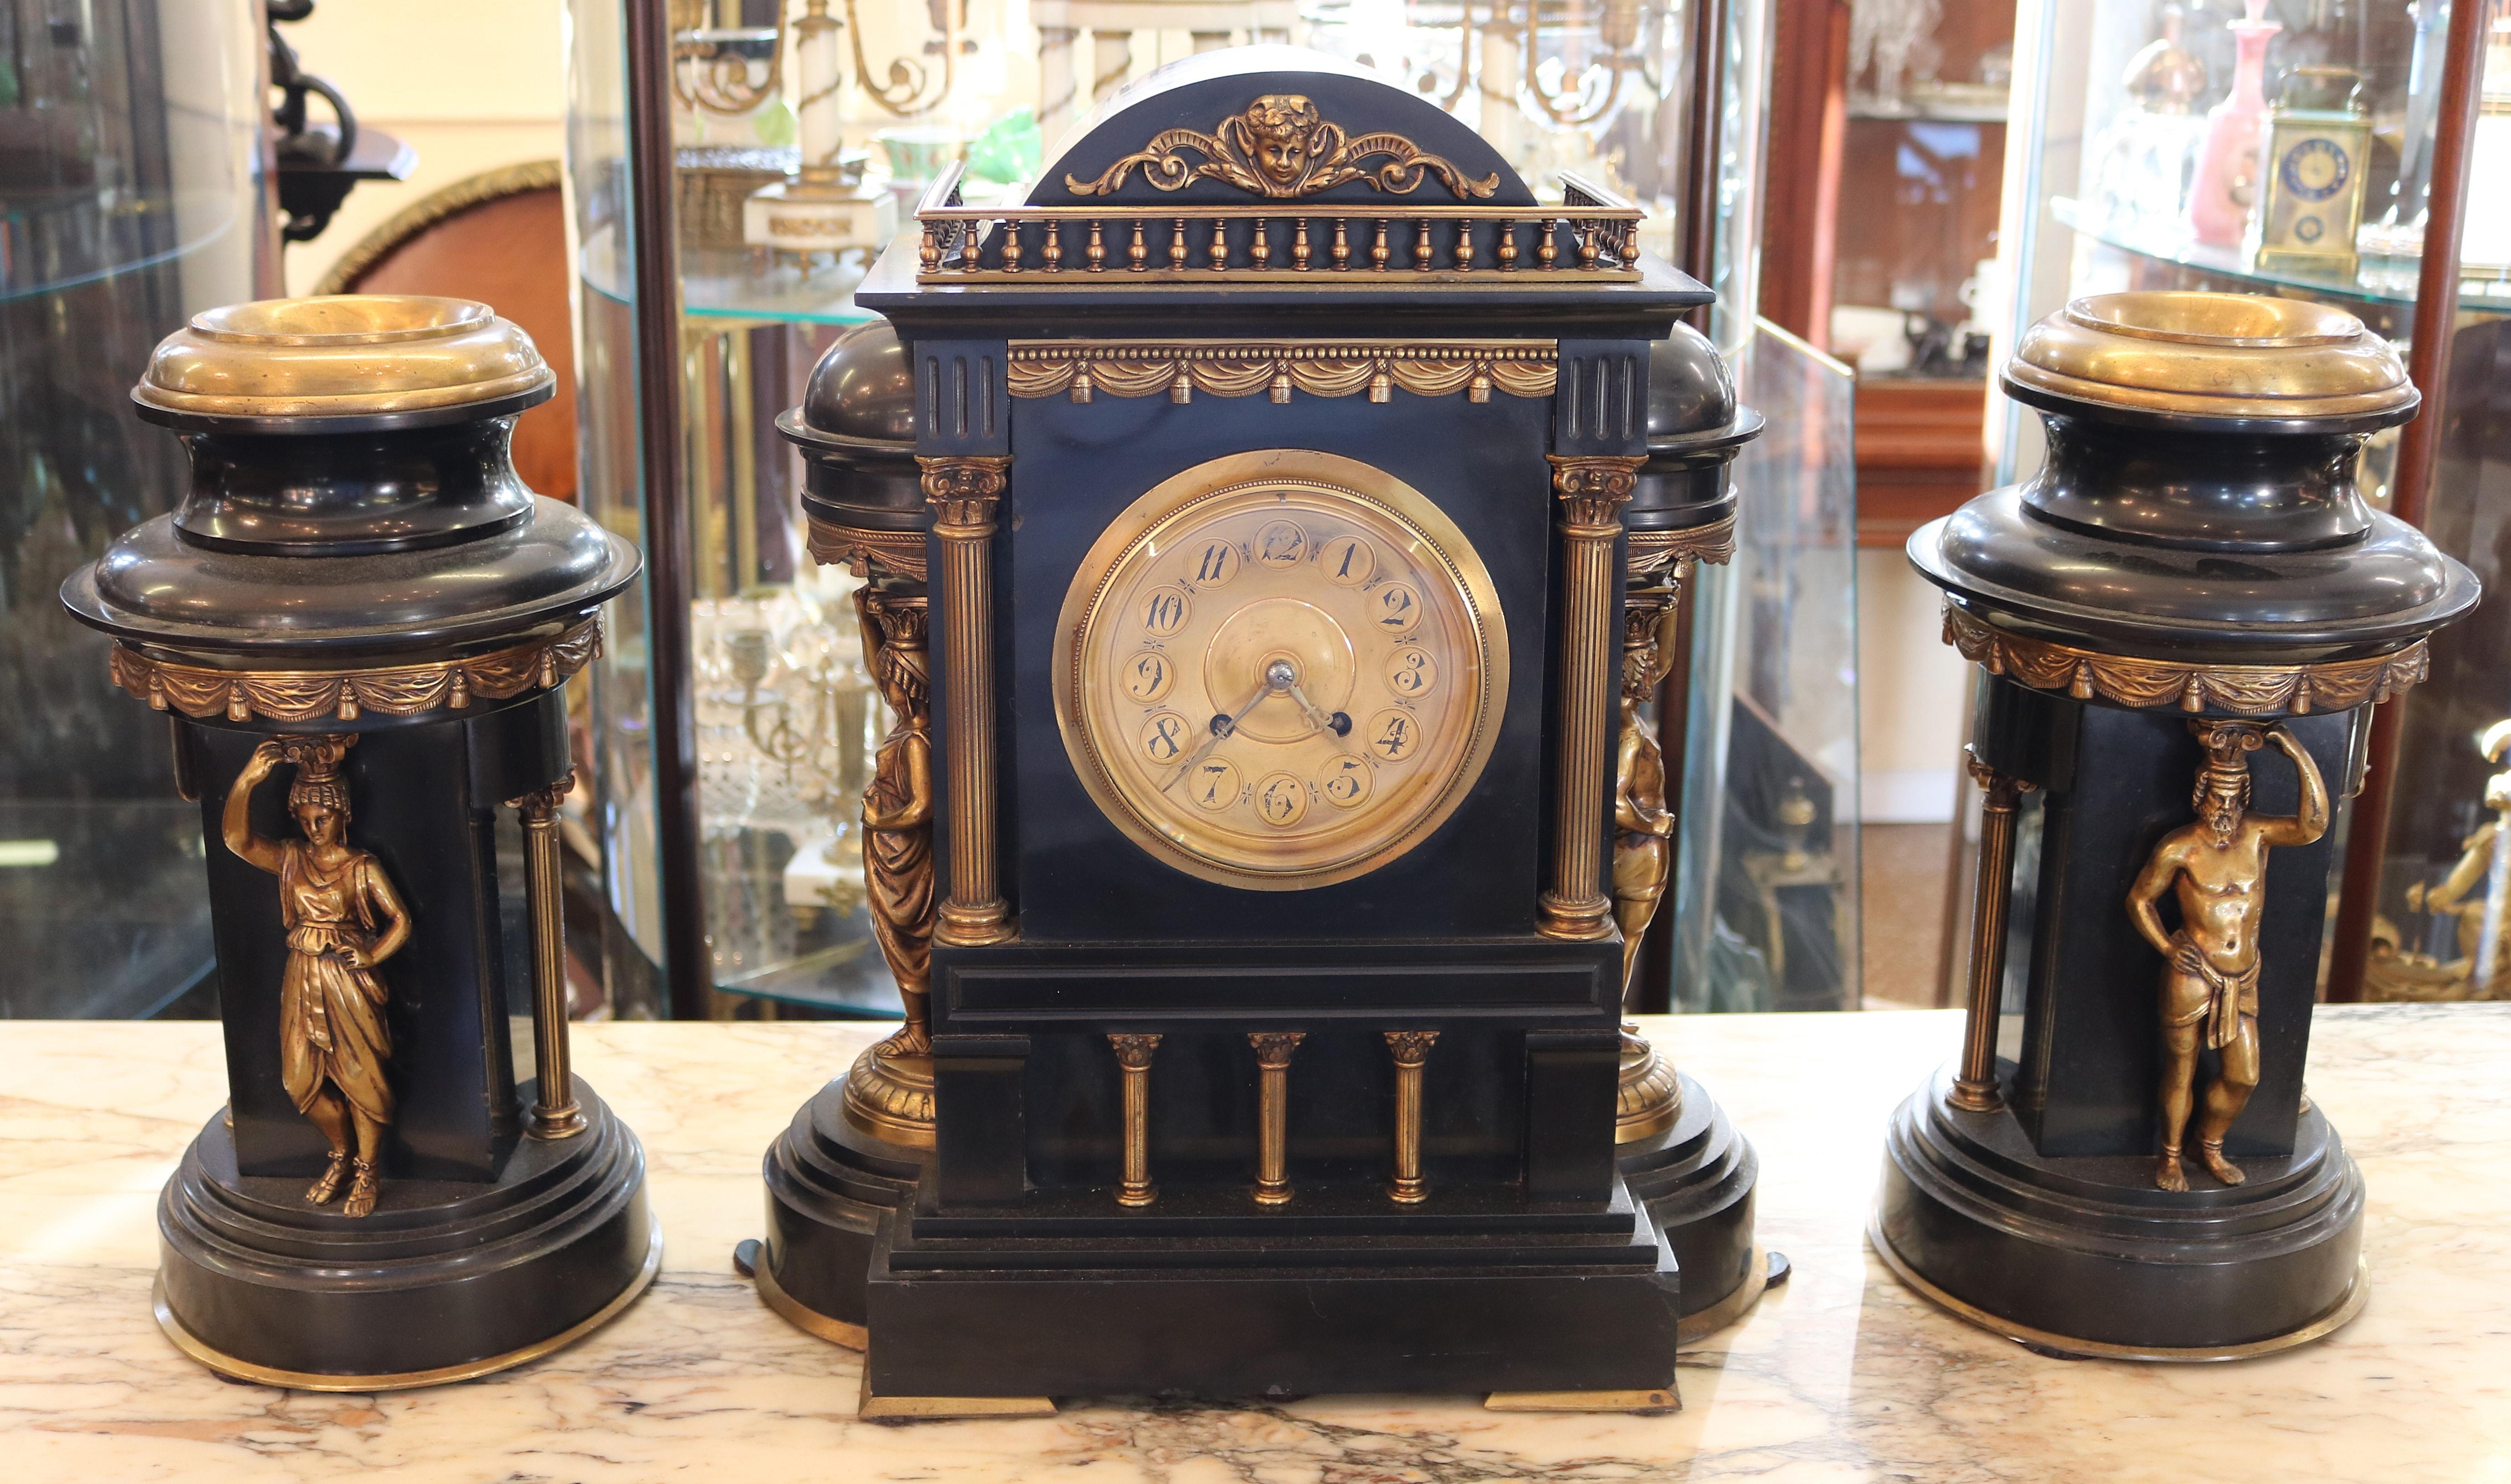 19. Jahrhundert Schiefer Neo Classical Garnitur Uhrensatz

Abmessungen: Uhr - 17